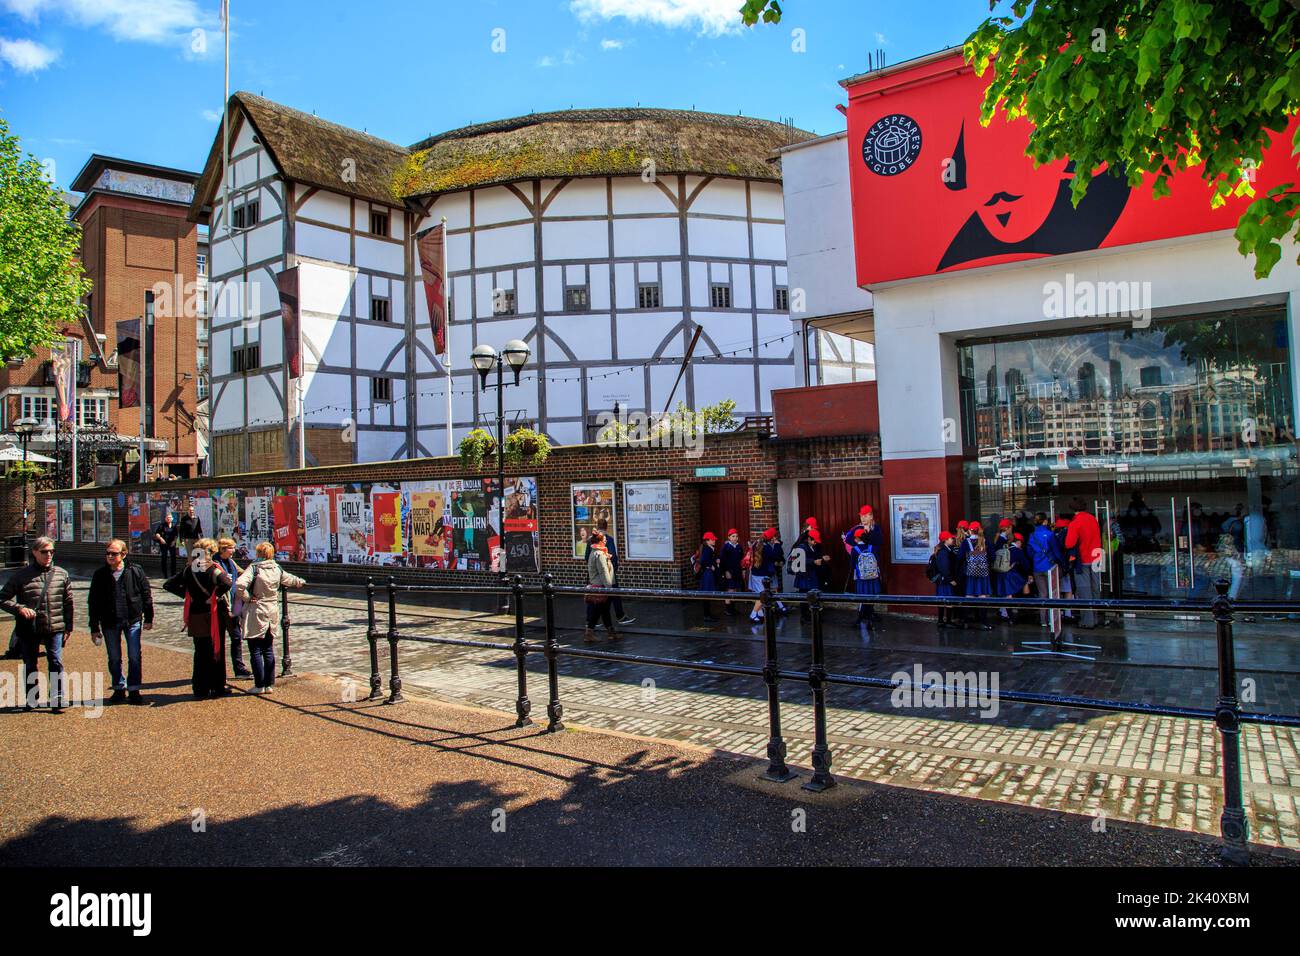 LONDRES, GRAN BRETAÑA - MAYO DE 13. 2014: Este es el nuevo teatro Globe de Shakespeare, que fue construido según el antiguo plan en el sitio del histor Foto de stock